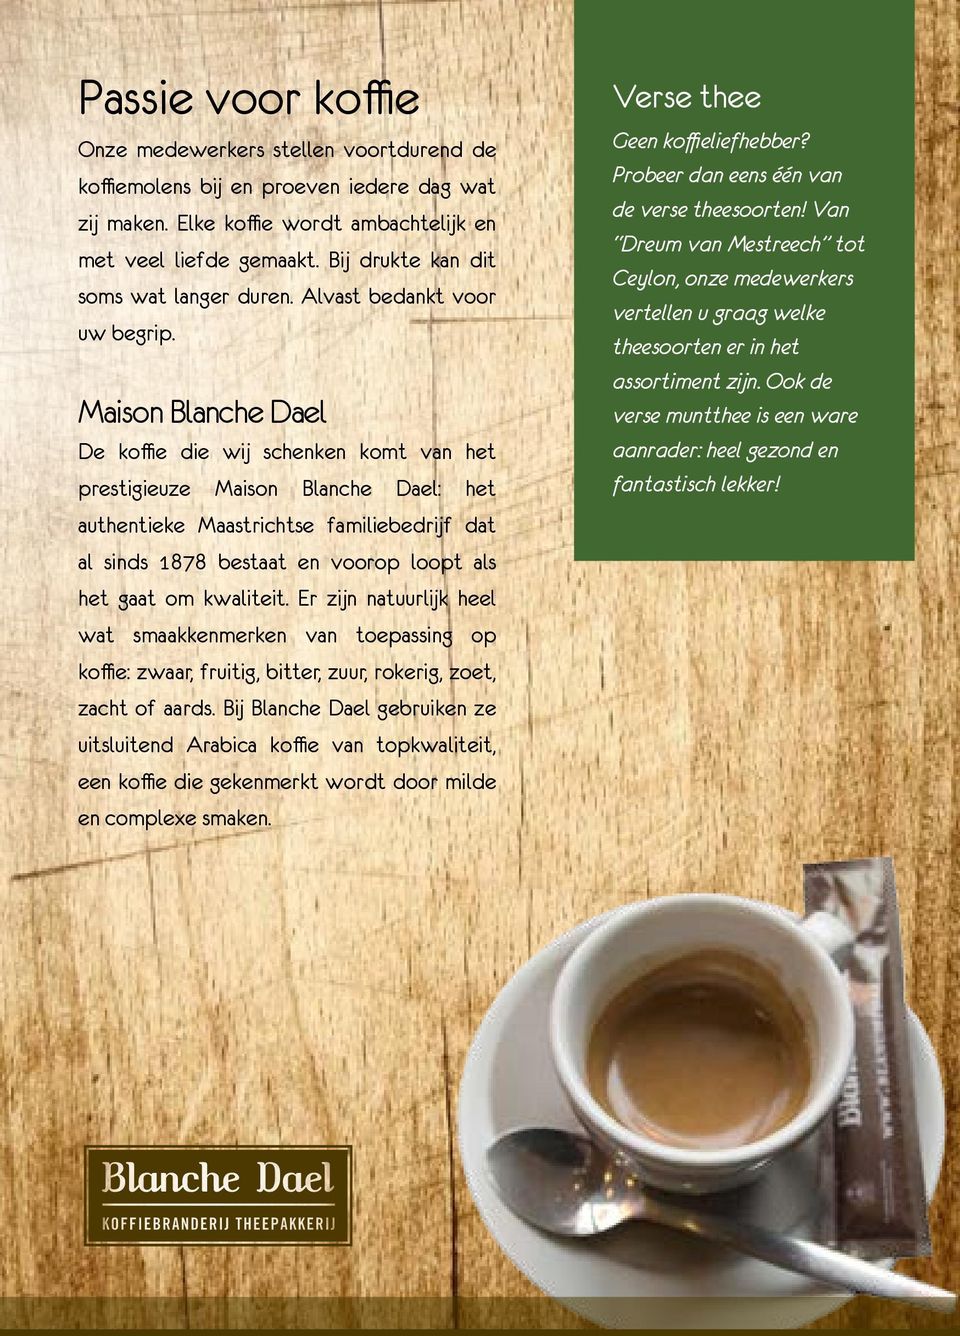 Maison Blanche Dael De koffie die wij schenken komt van het prestigieuze Maison Blanche Dael: het authentieke Maastrichtse familiebedrijf dat al sinds 1878 bestaat en voorop loopt als het gaat om